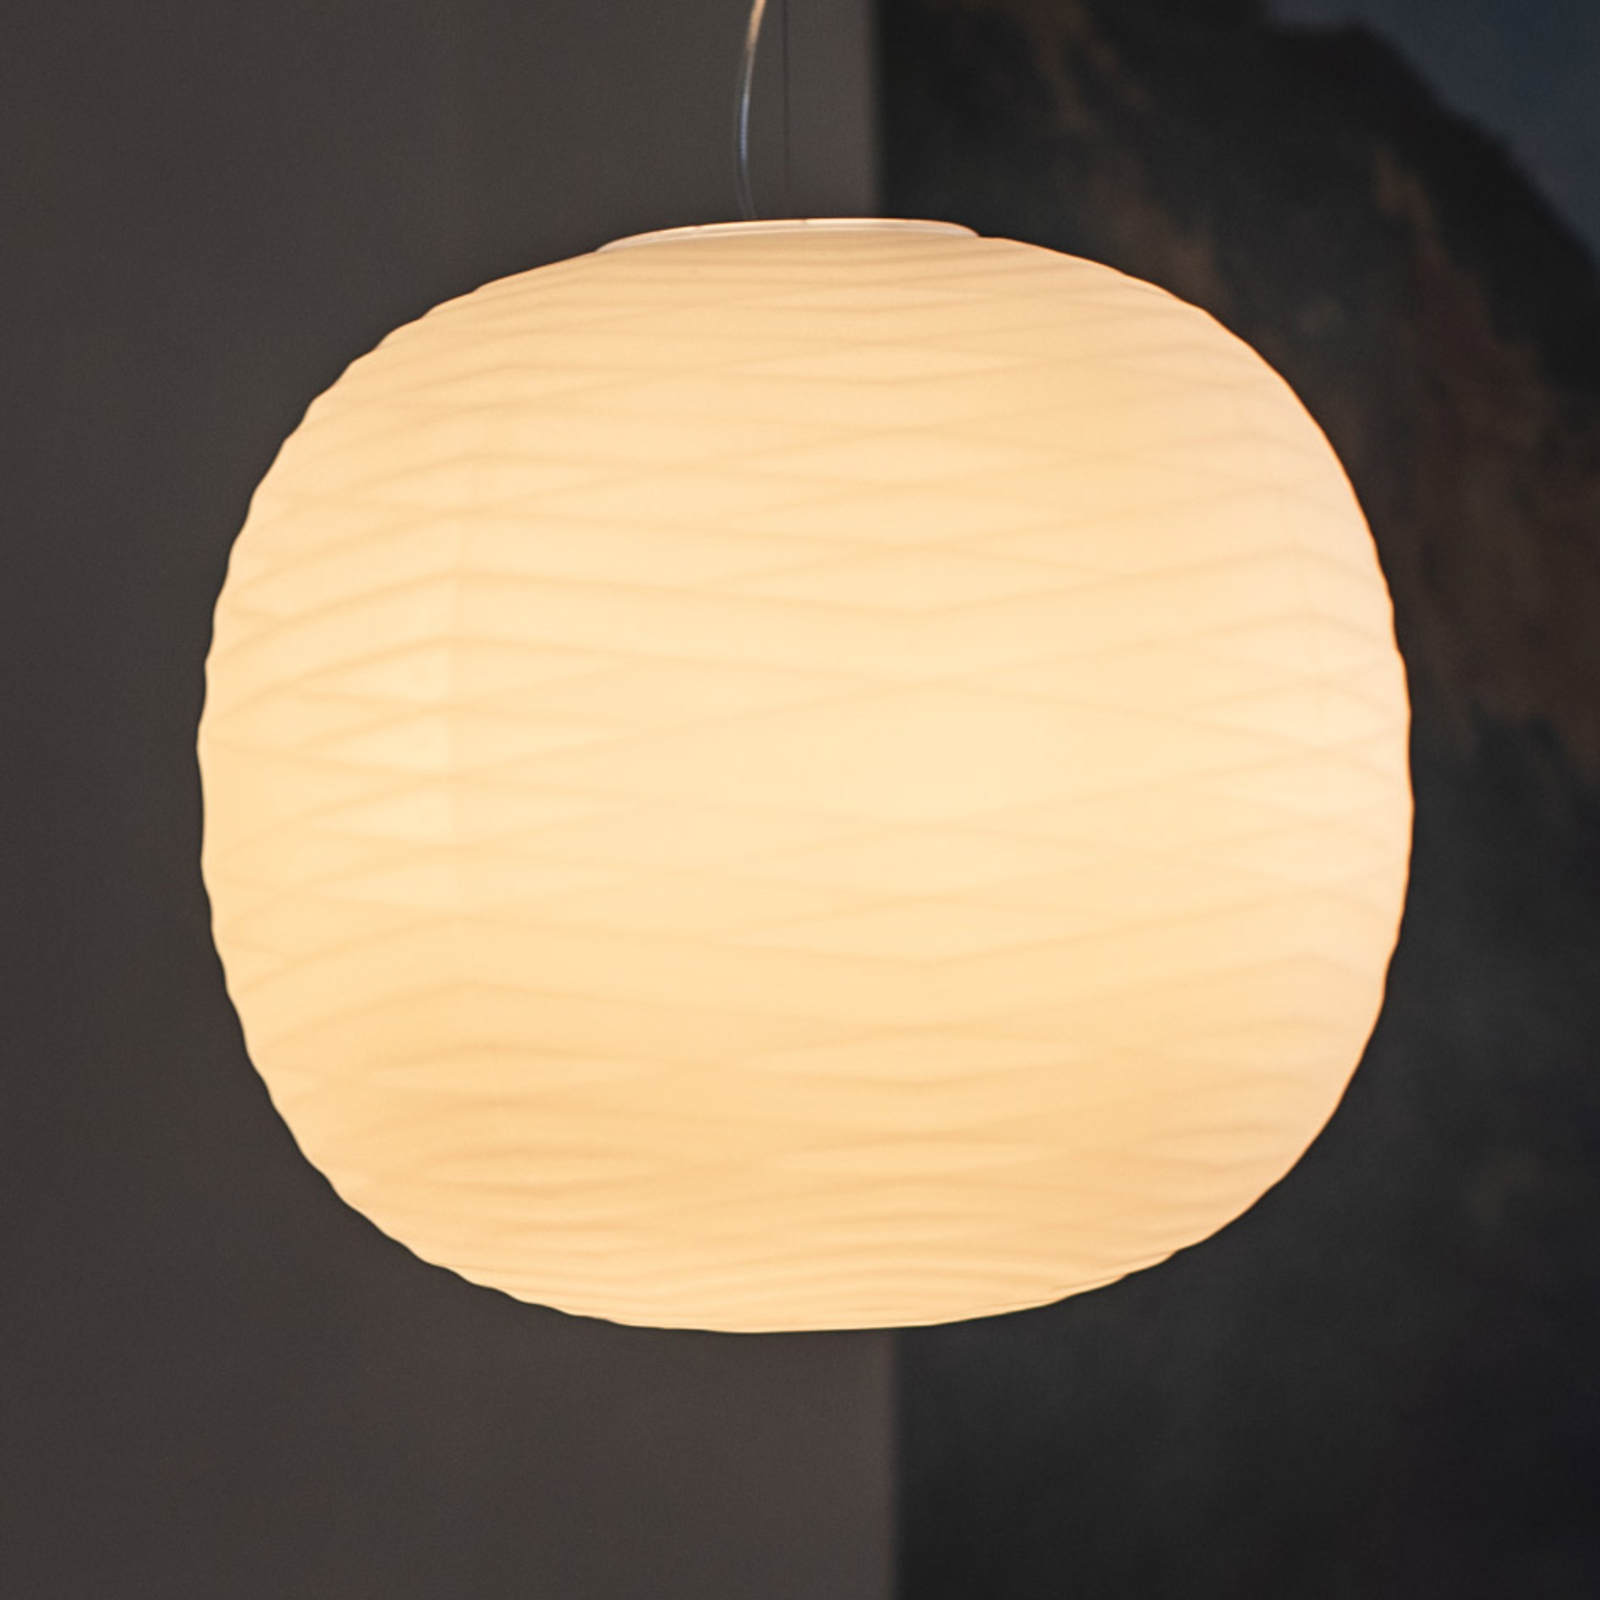 Foscarini Gem E27 LED pendant light made of glass